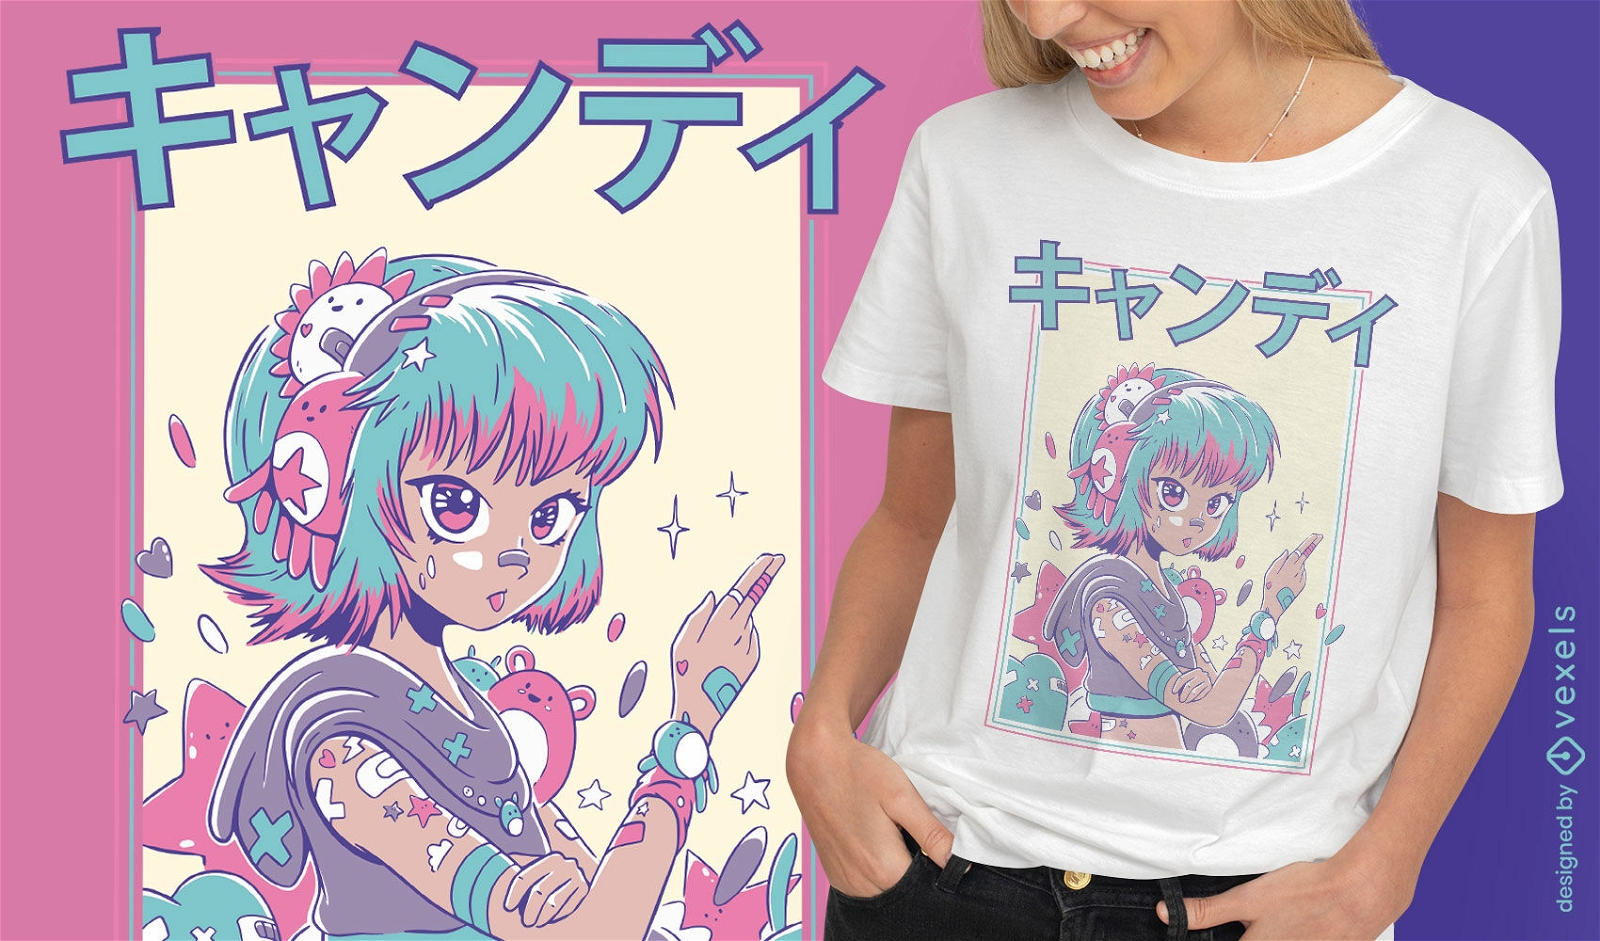 Niedliches japanisches M?dchen-T-Shirt Design des Anime